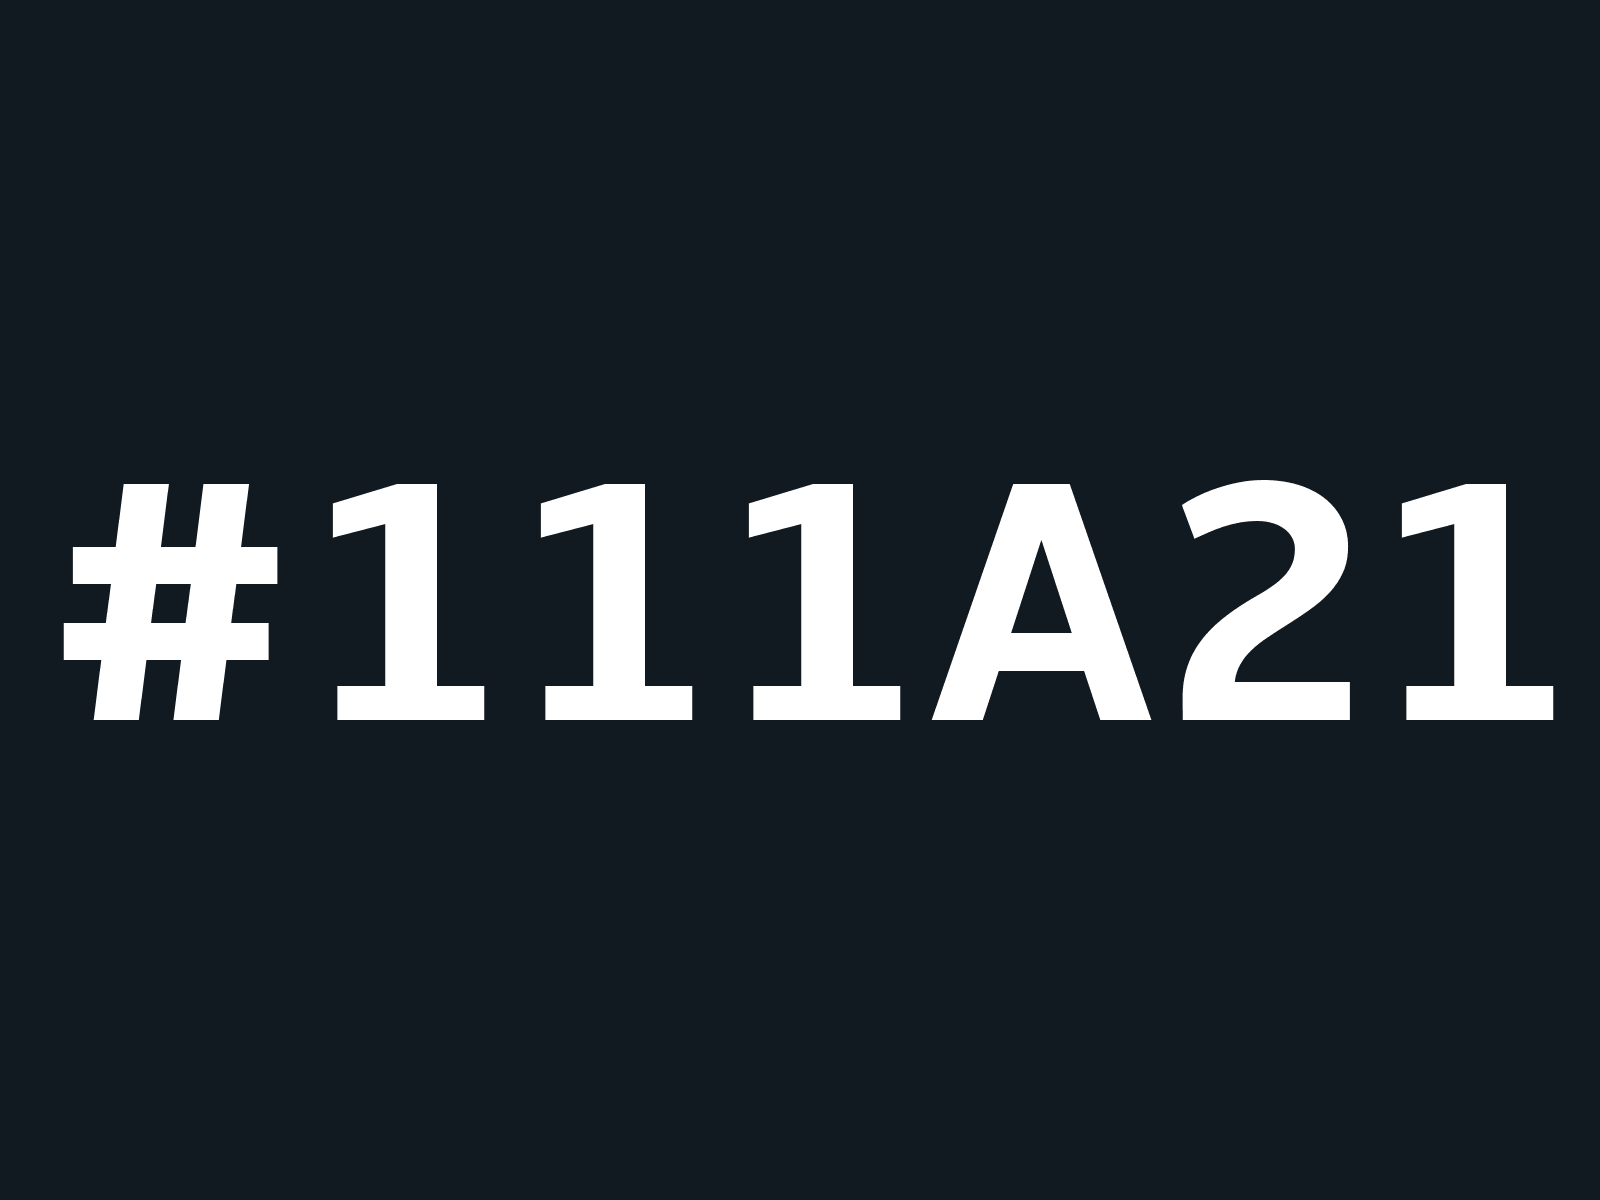 111a21